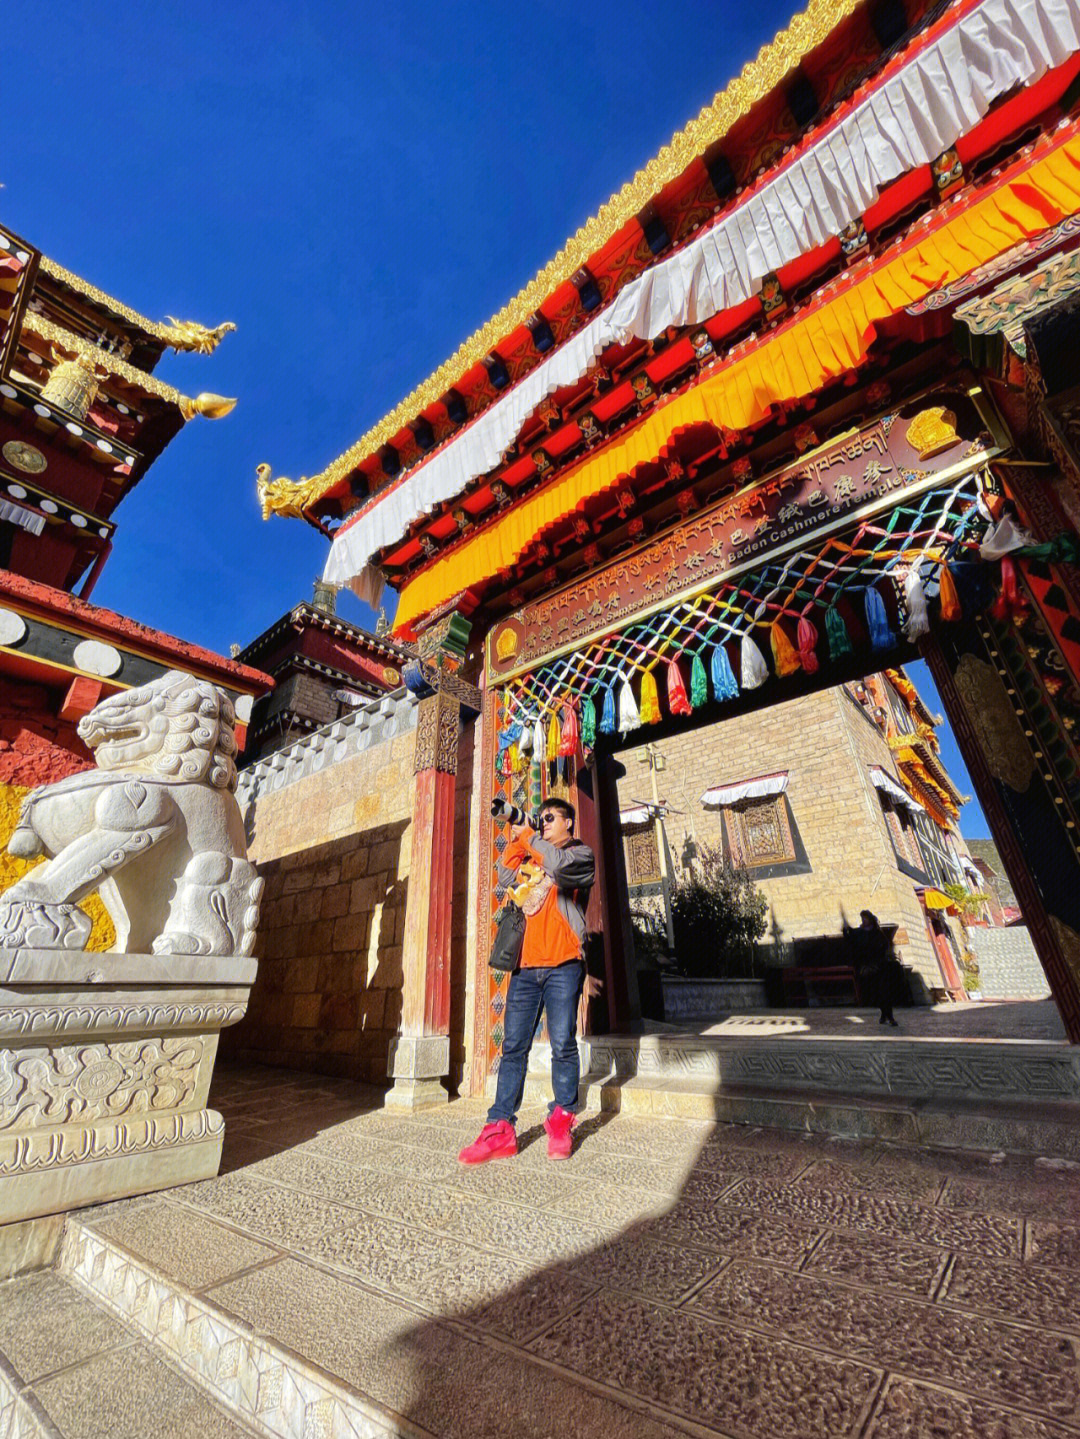 松赞林寺拍摄长焦镜头是最好的拍摄道具